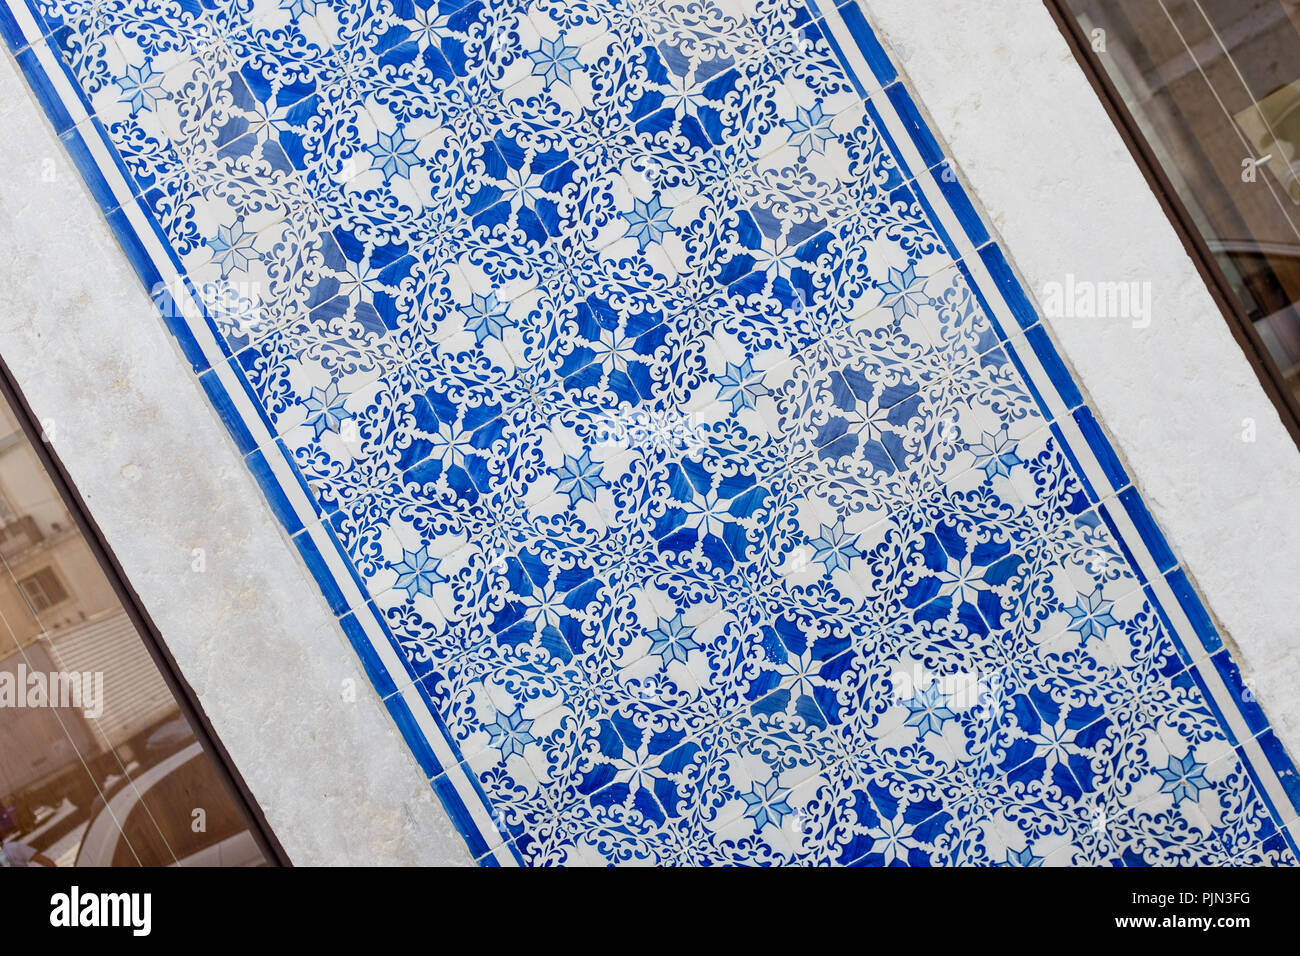 Carrelage traditionnel, connu sous le nom des azulejos, Lisbonne, Portugal.  Ces tuiles peintes peuvent être trouvés à travers le pays qui ornent de  nombreux édifices Photo Stock - Alamy